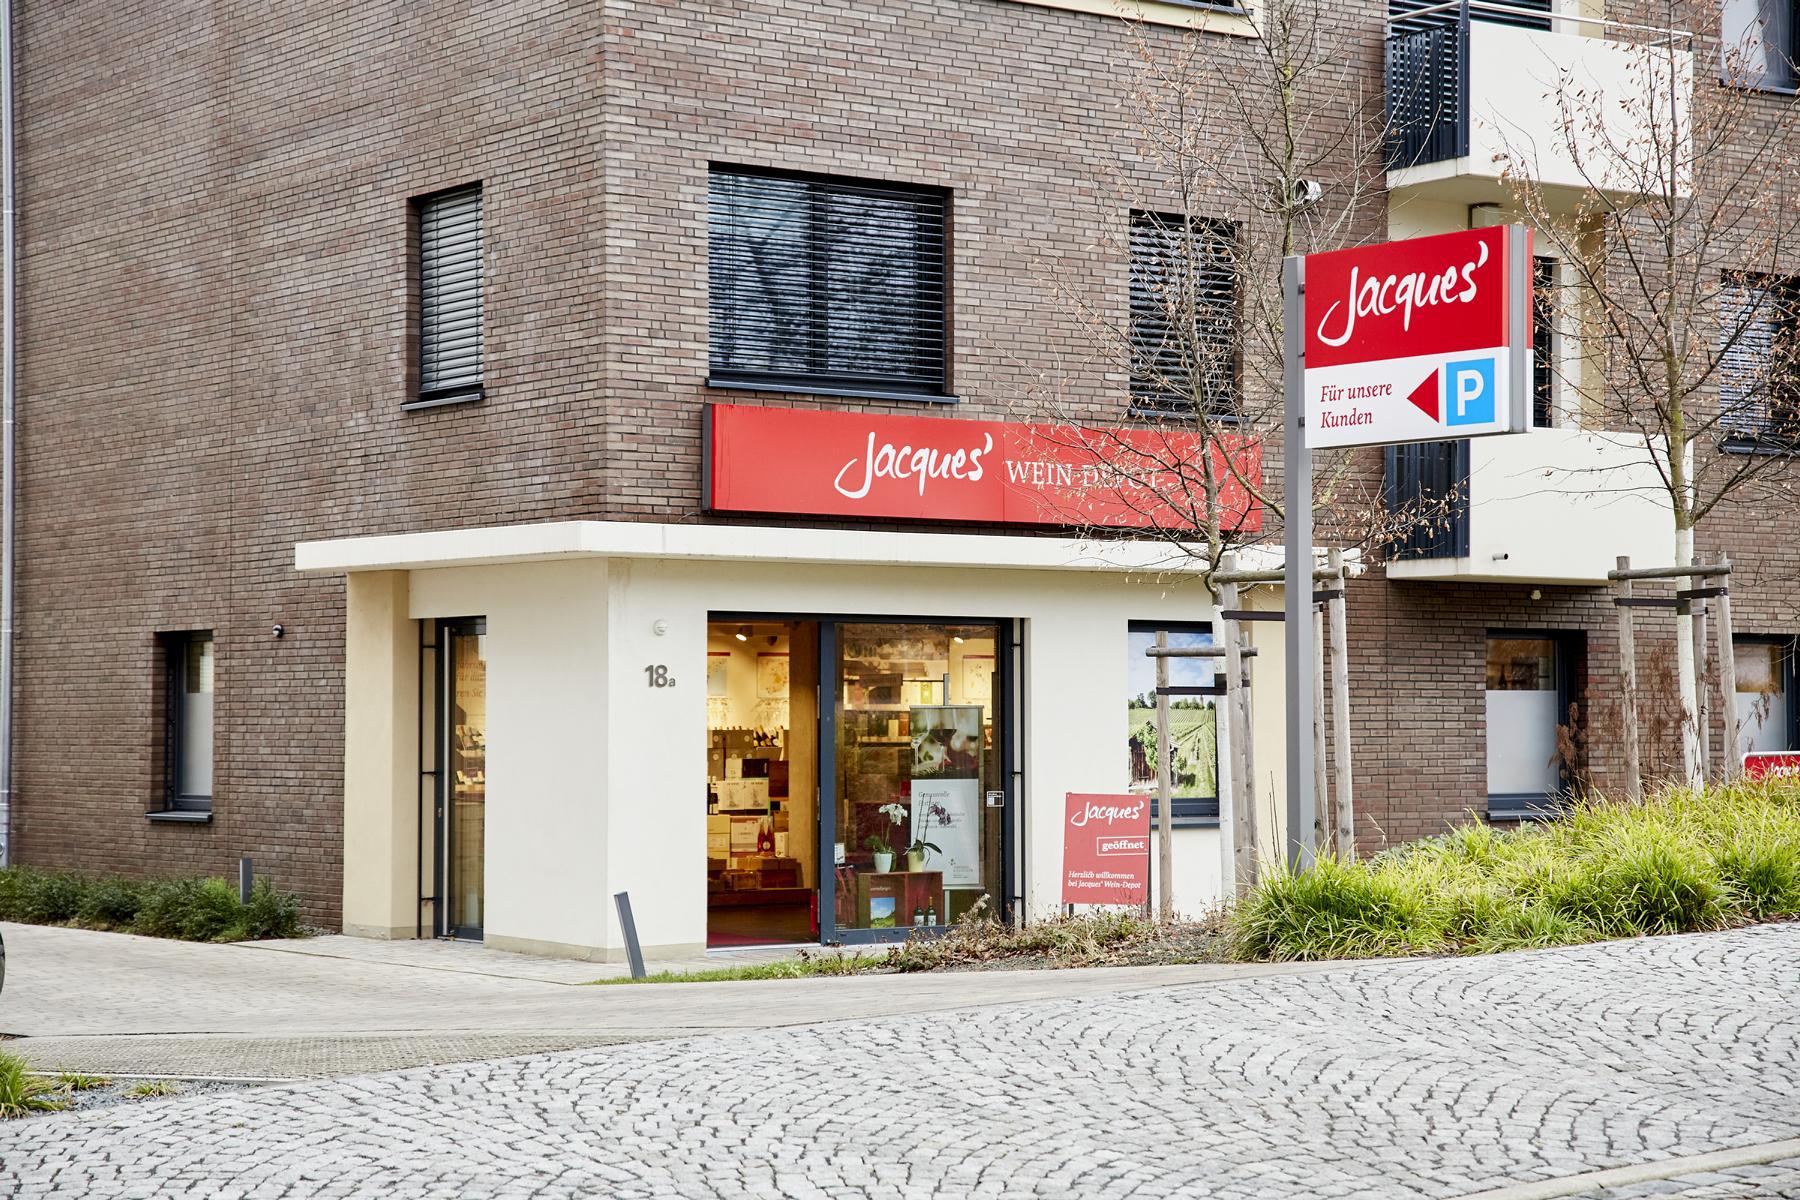 Jacques’ Wein-Depot Erfurt, Steigerstraße 18a in Erfurt